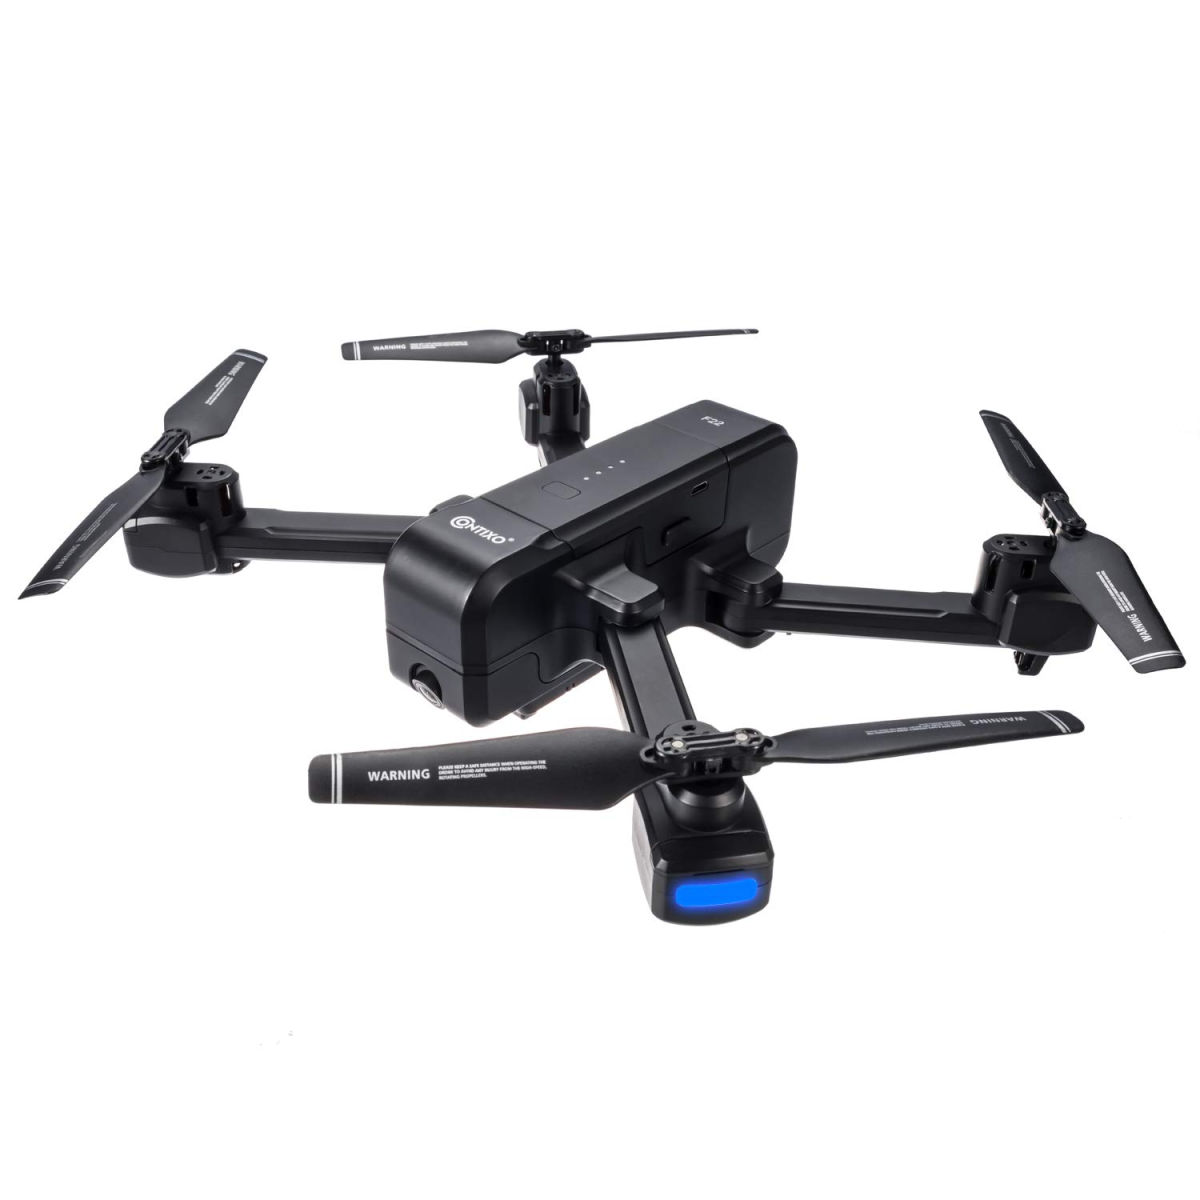 Contixo F22 RC Foldable Quadcopter Drone